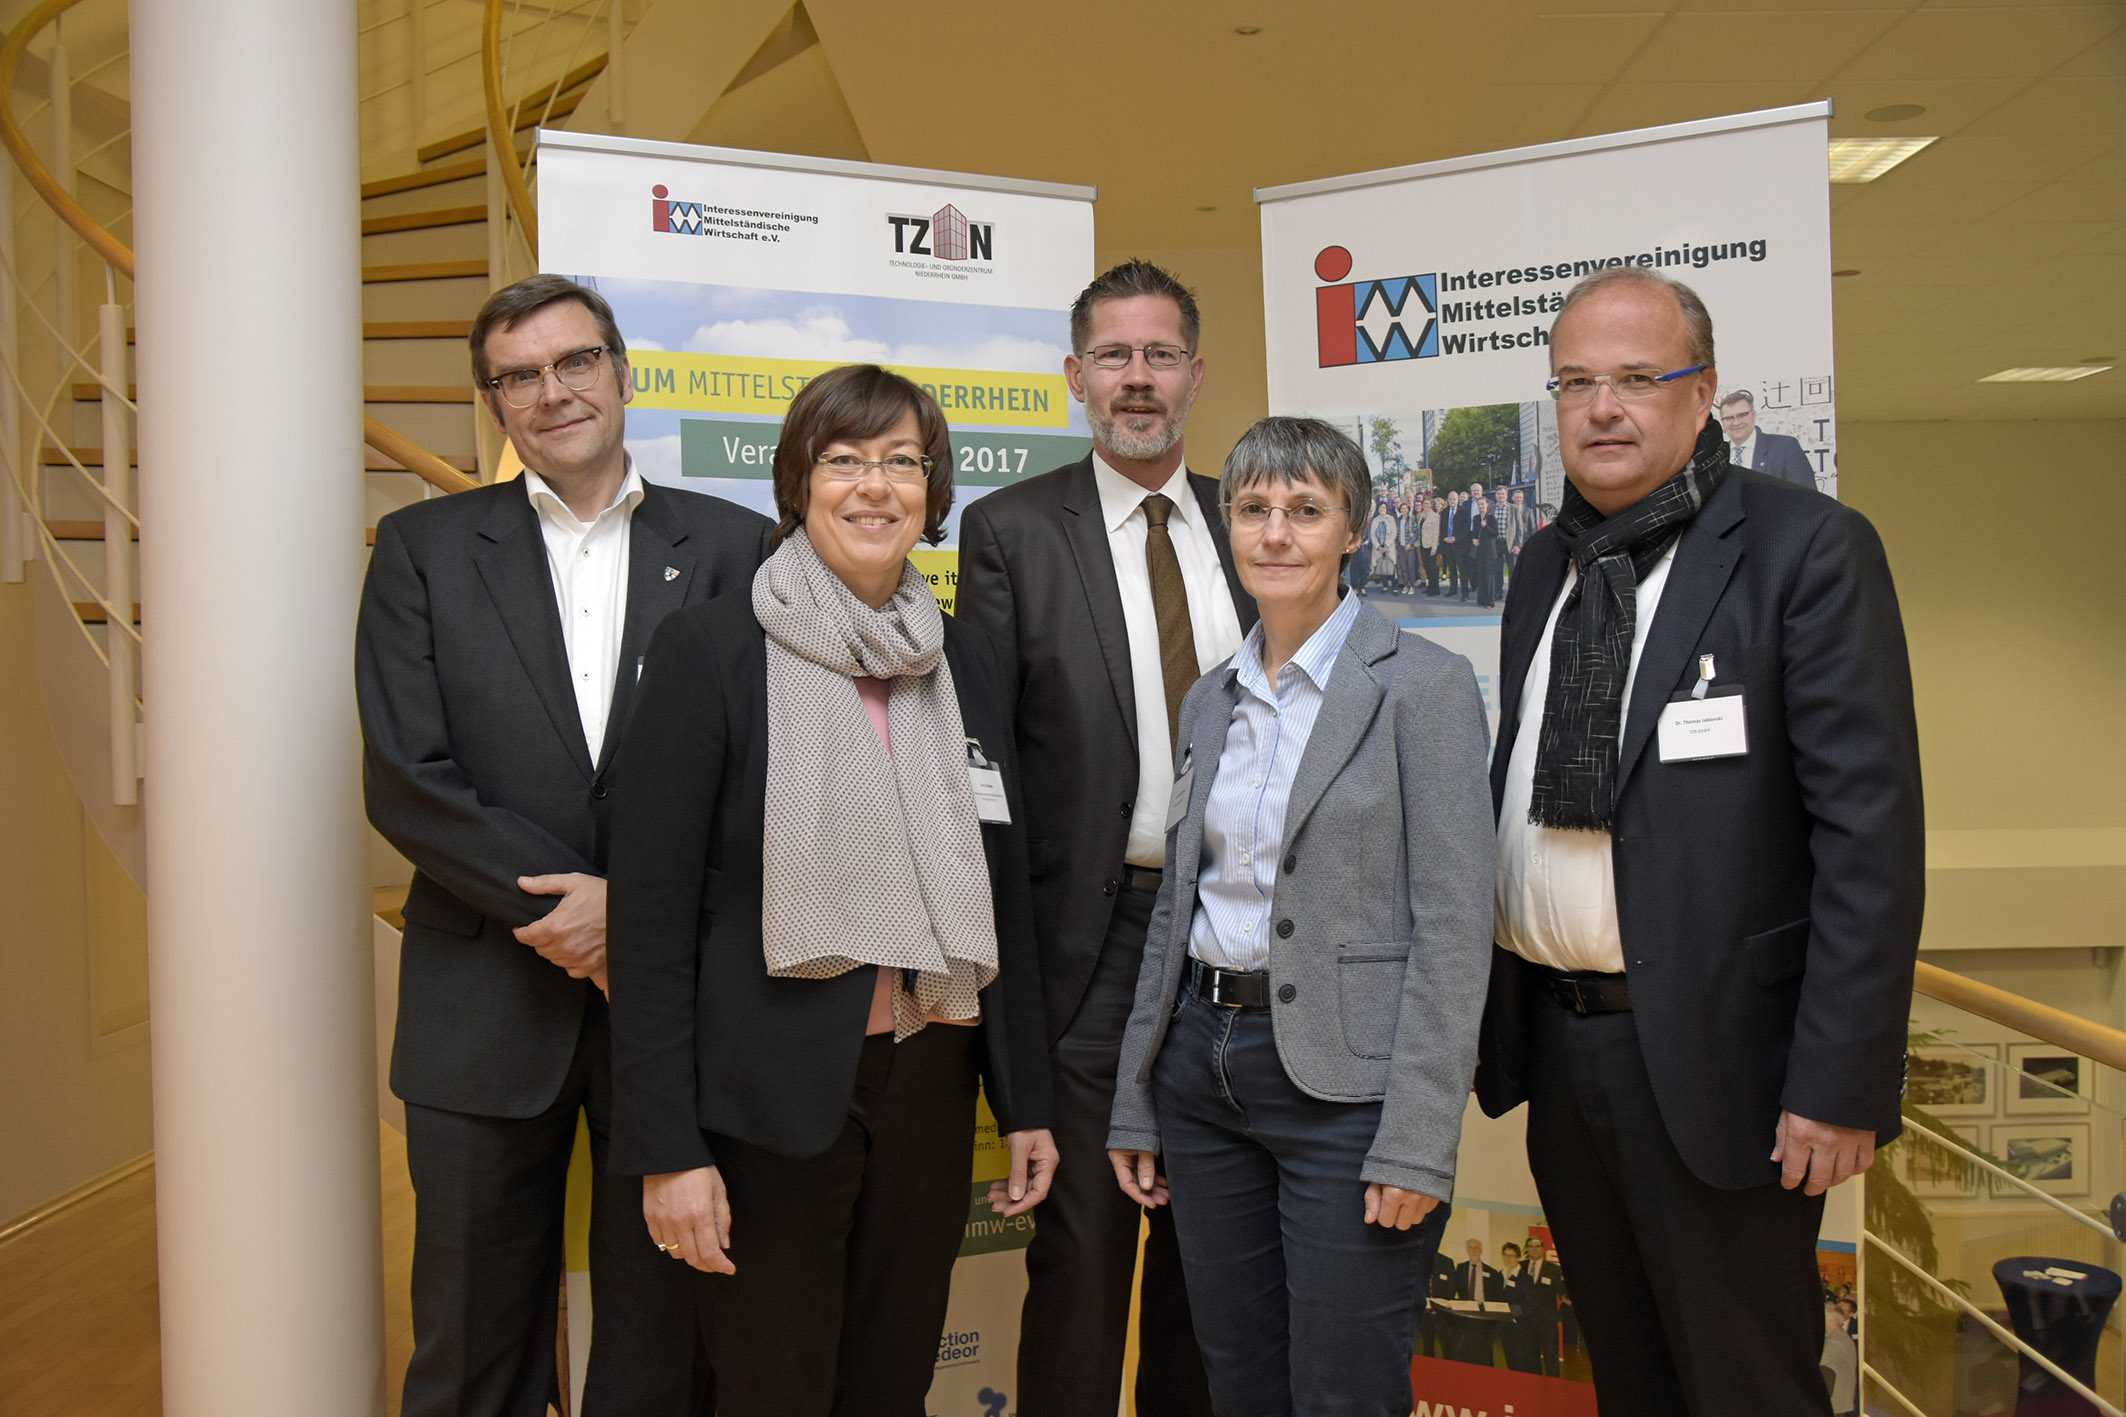 Die Referenten, Diskutanten und Organisatoren des Forum Mittelstand Niederrhein in Tönisvorst auf einem Foto.